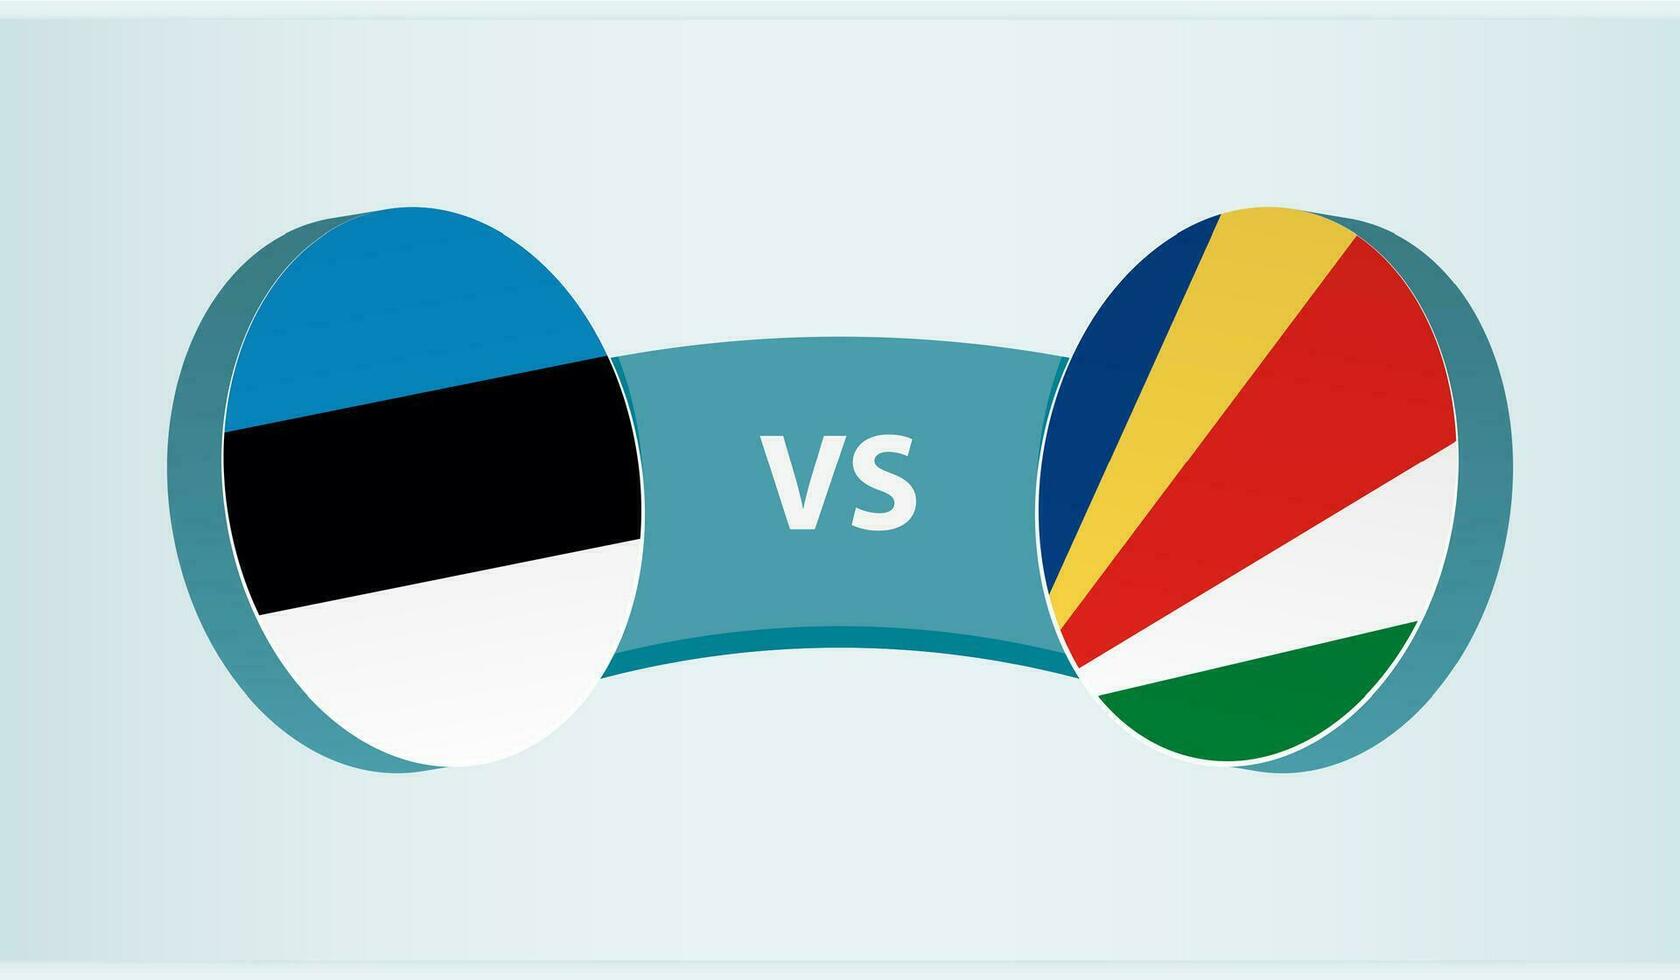 Estonia versus seychelles, equipo Deportes competencia concepto. vector